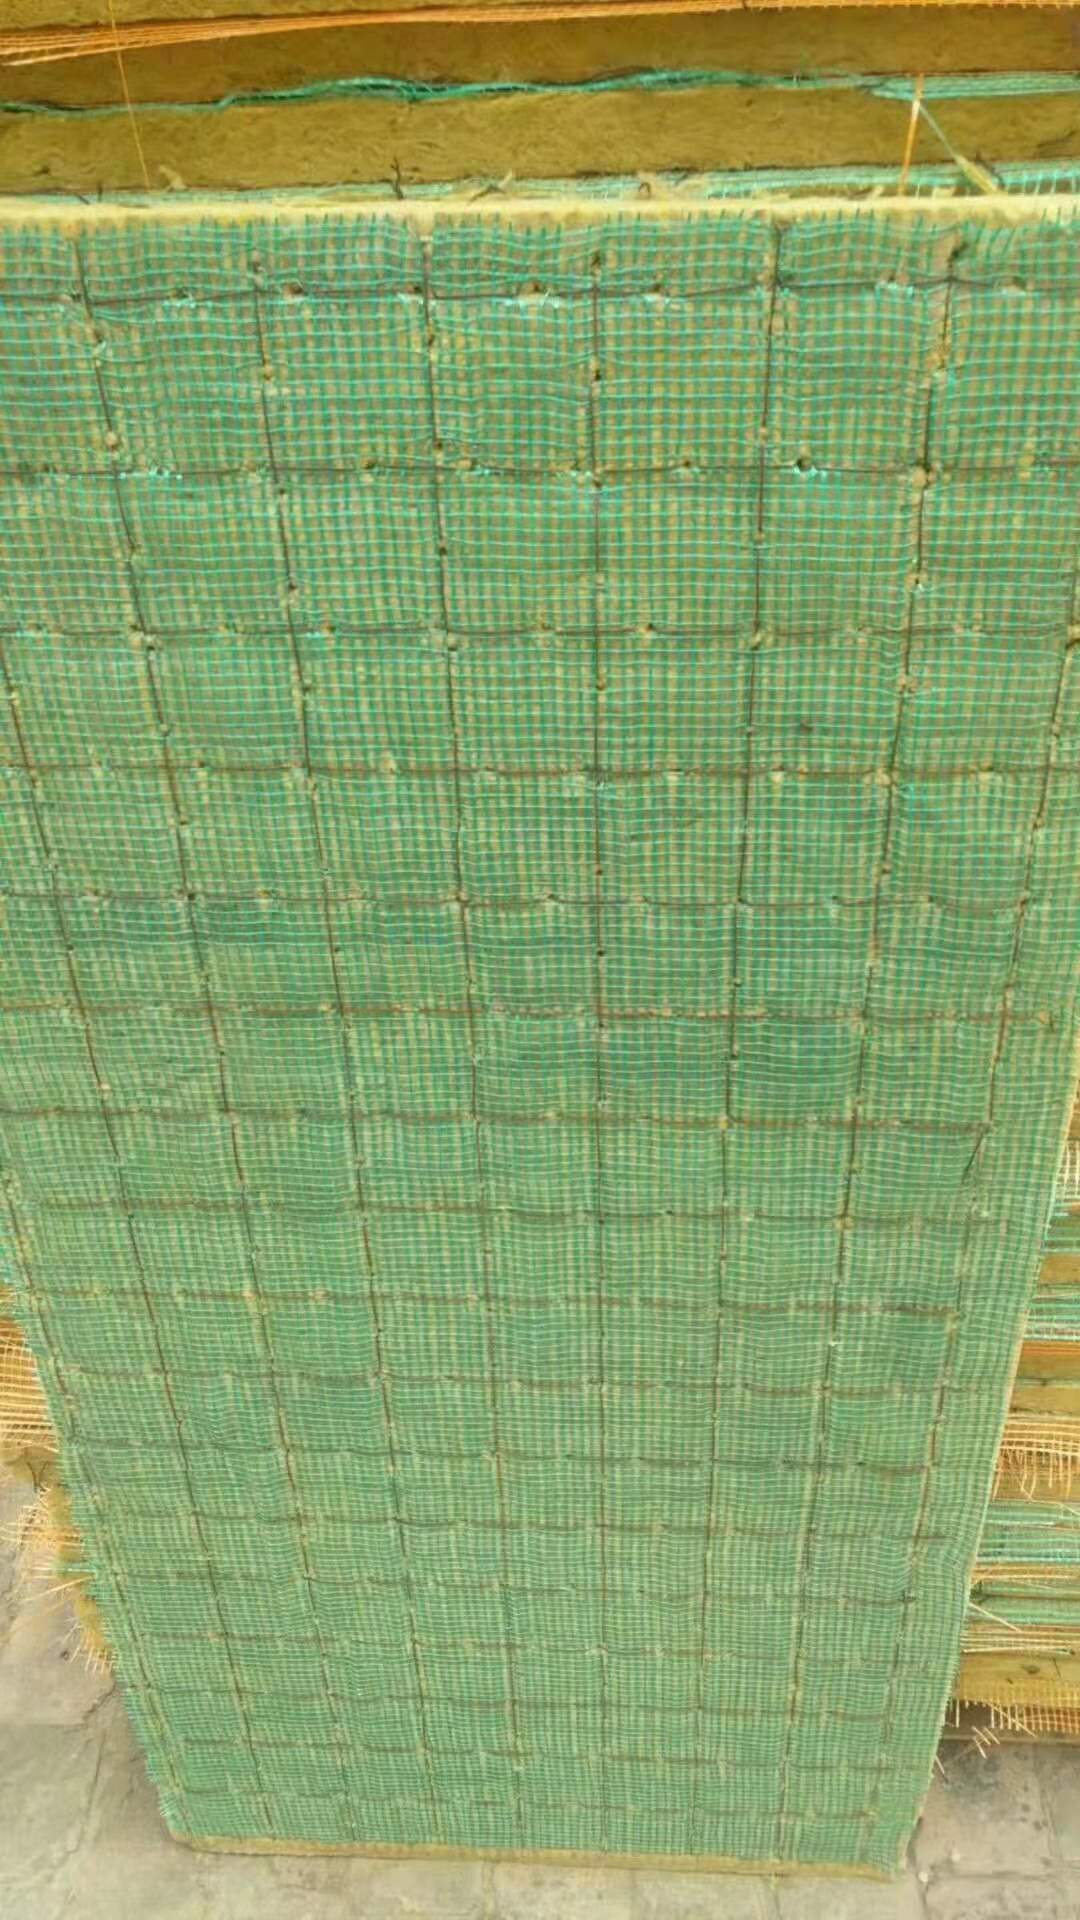 网织岩棉板